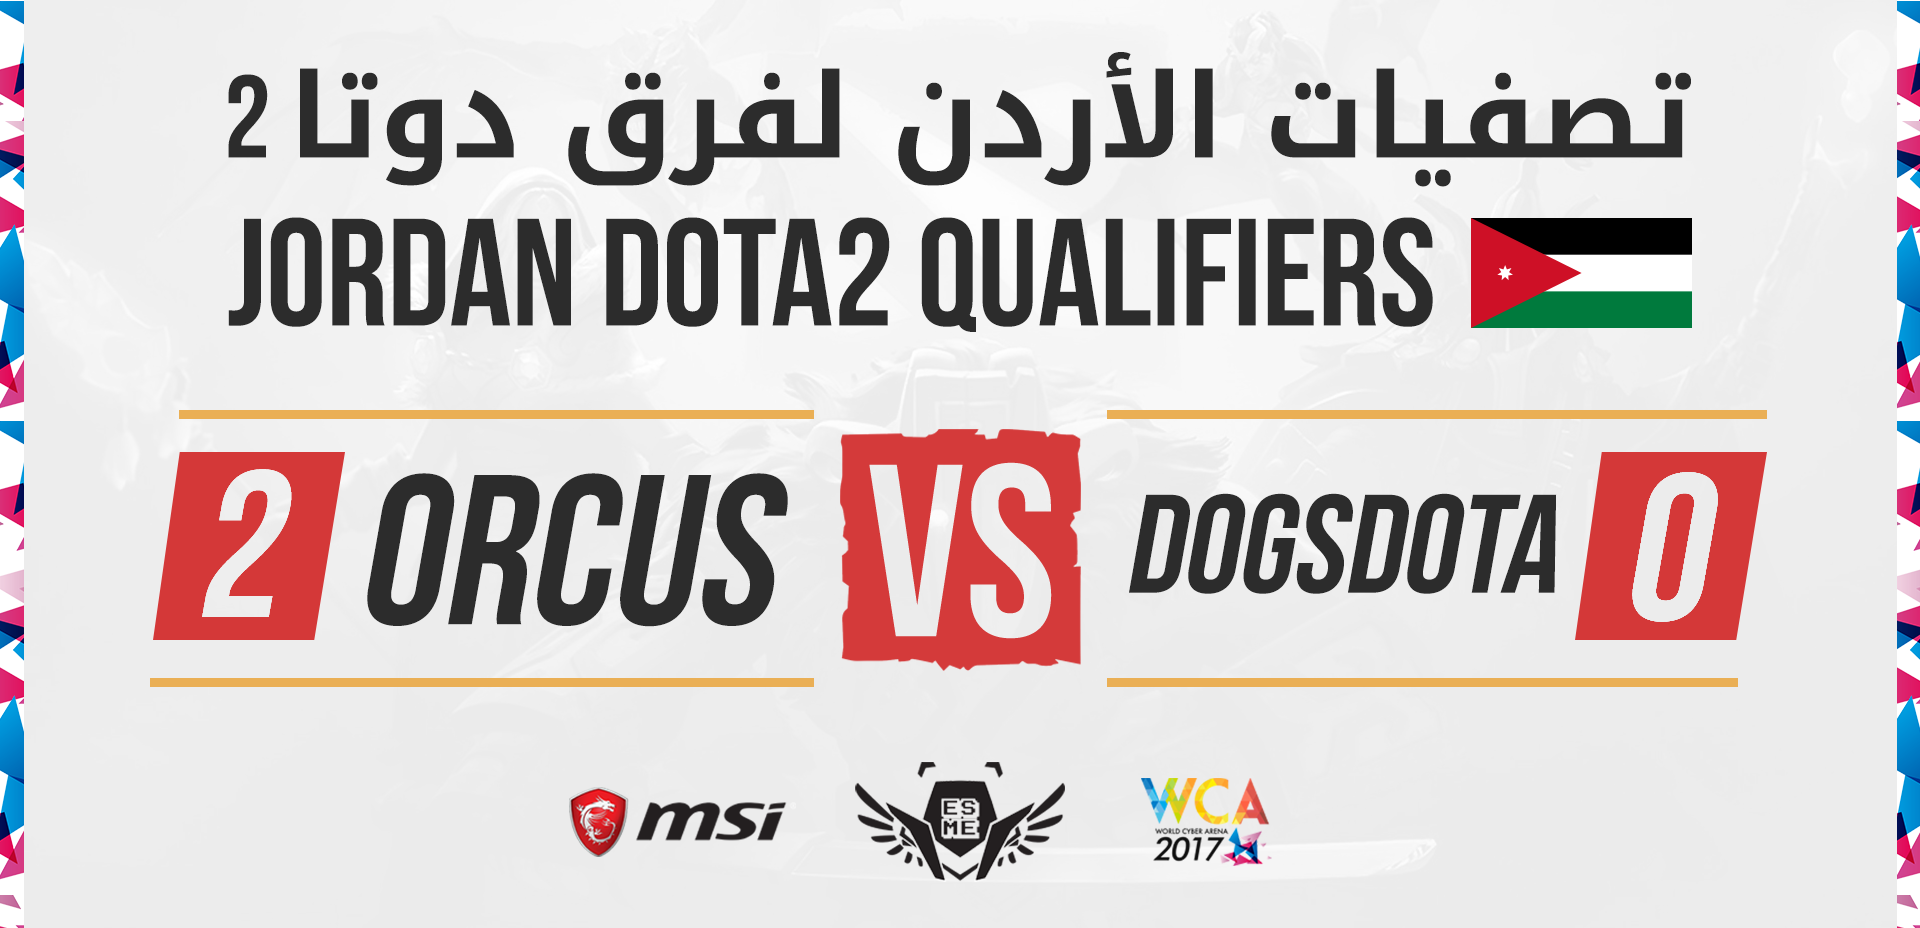 WCA 2017 MENA Jordan Qualifiers Dota 2 Orcus Miracle